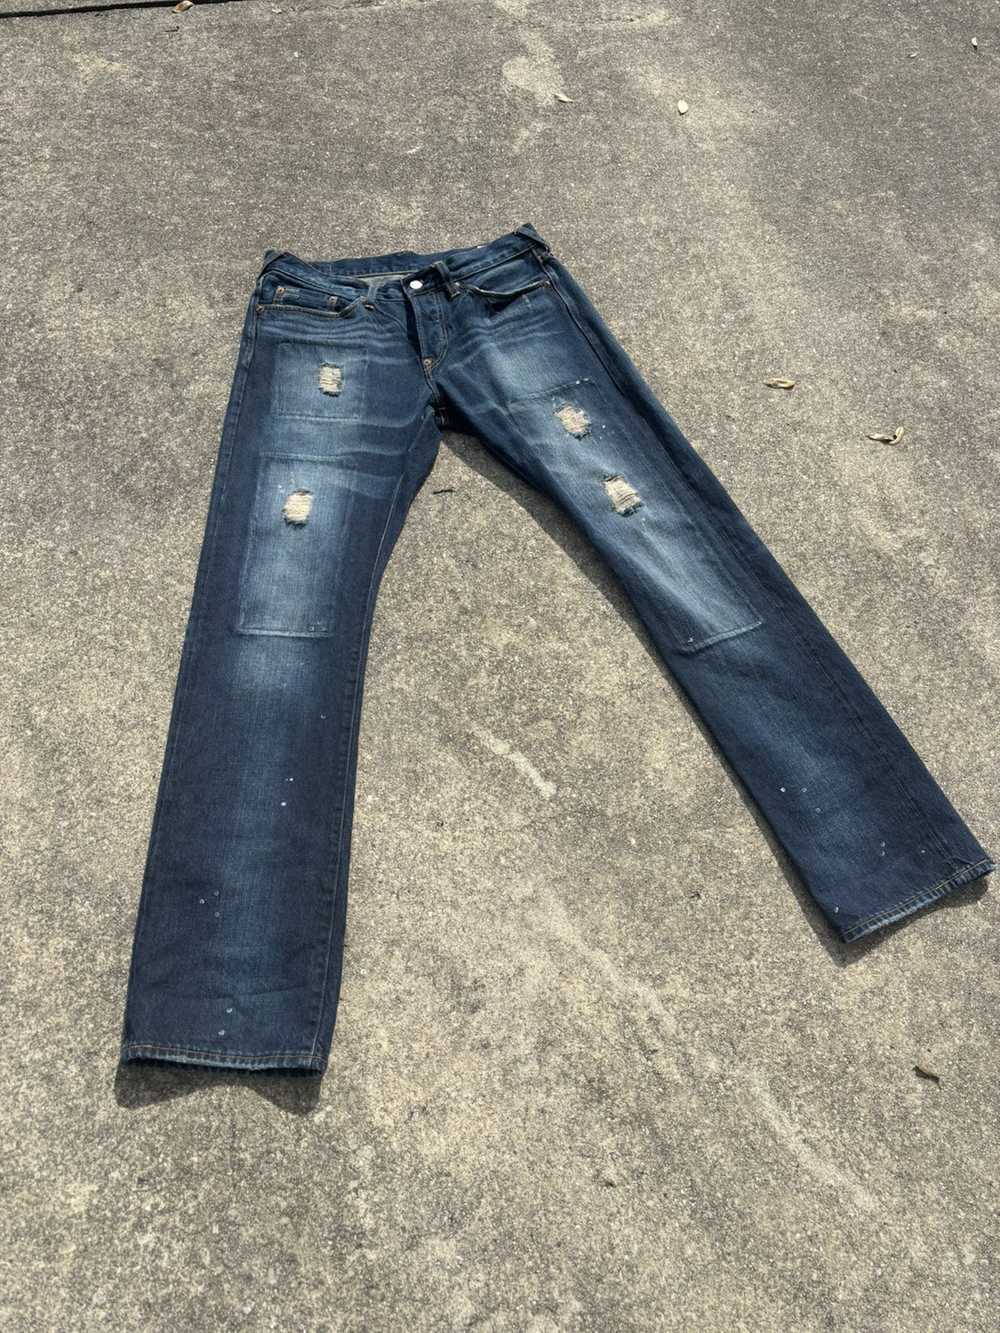 Evisu Evisu No.3 Denim Jeans - image 4